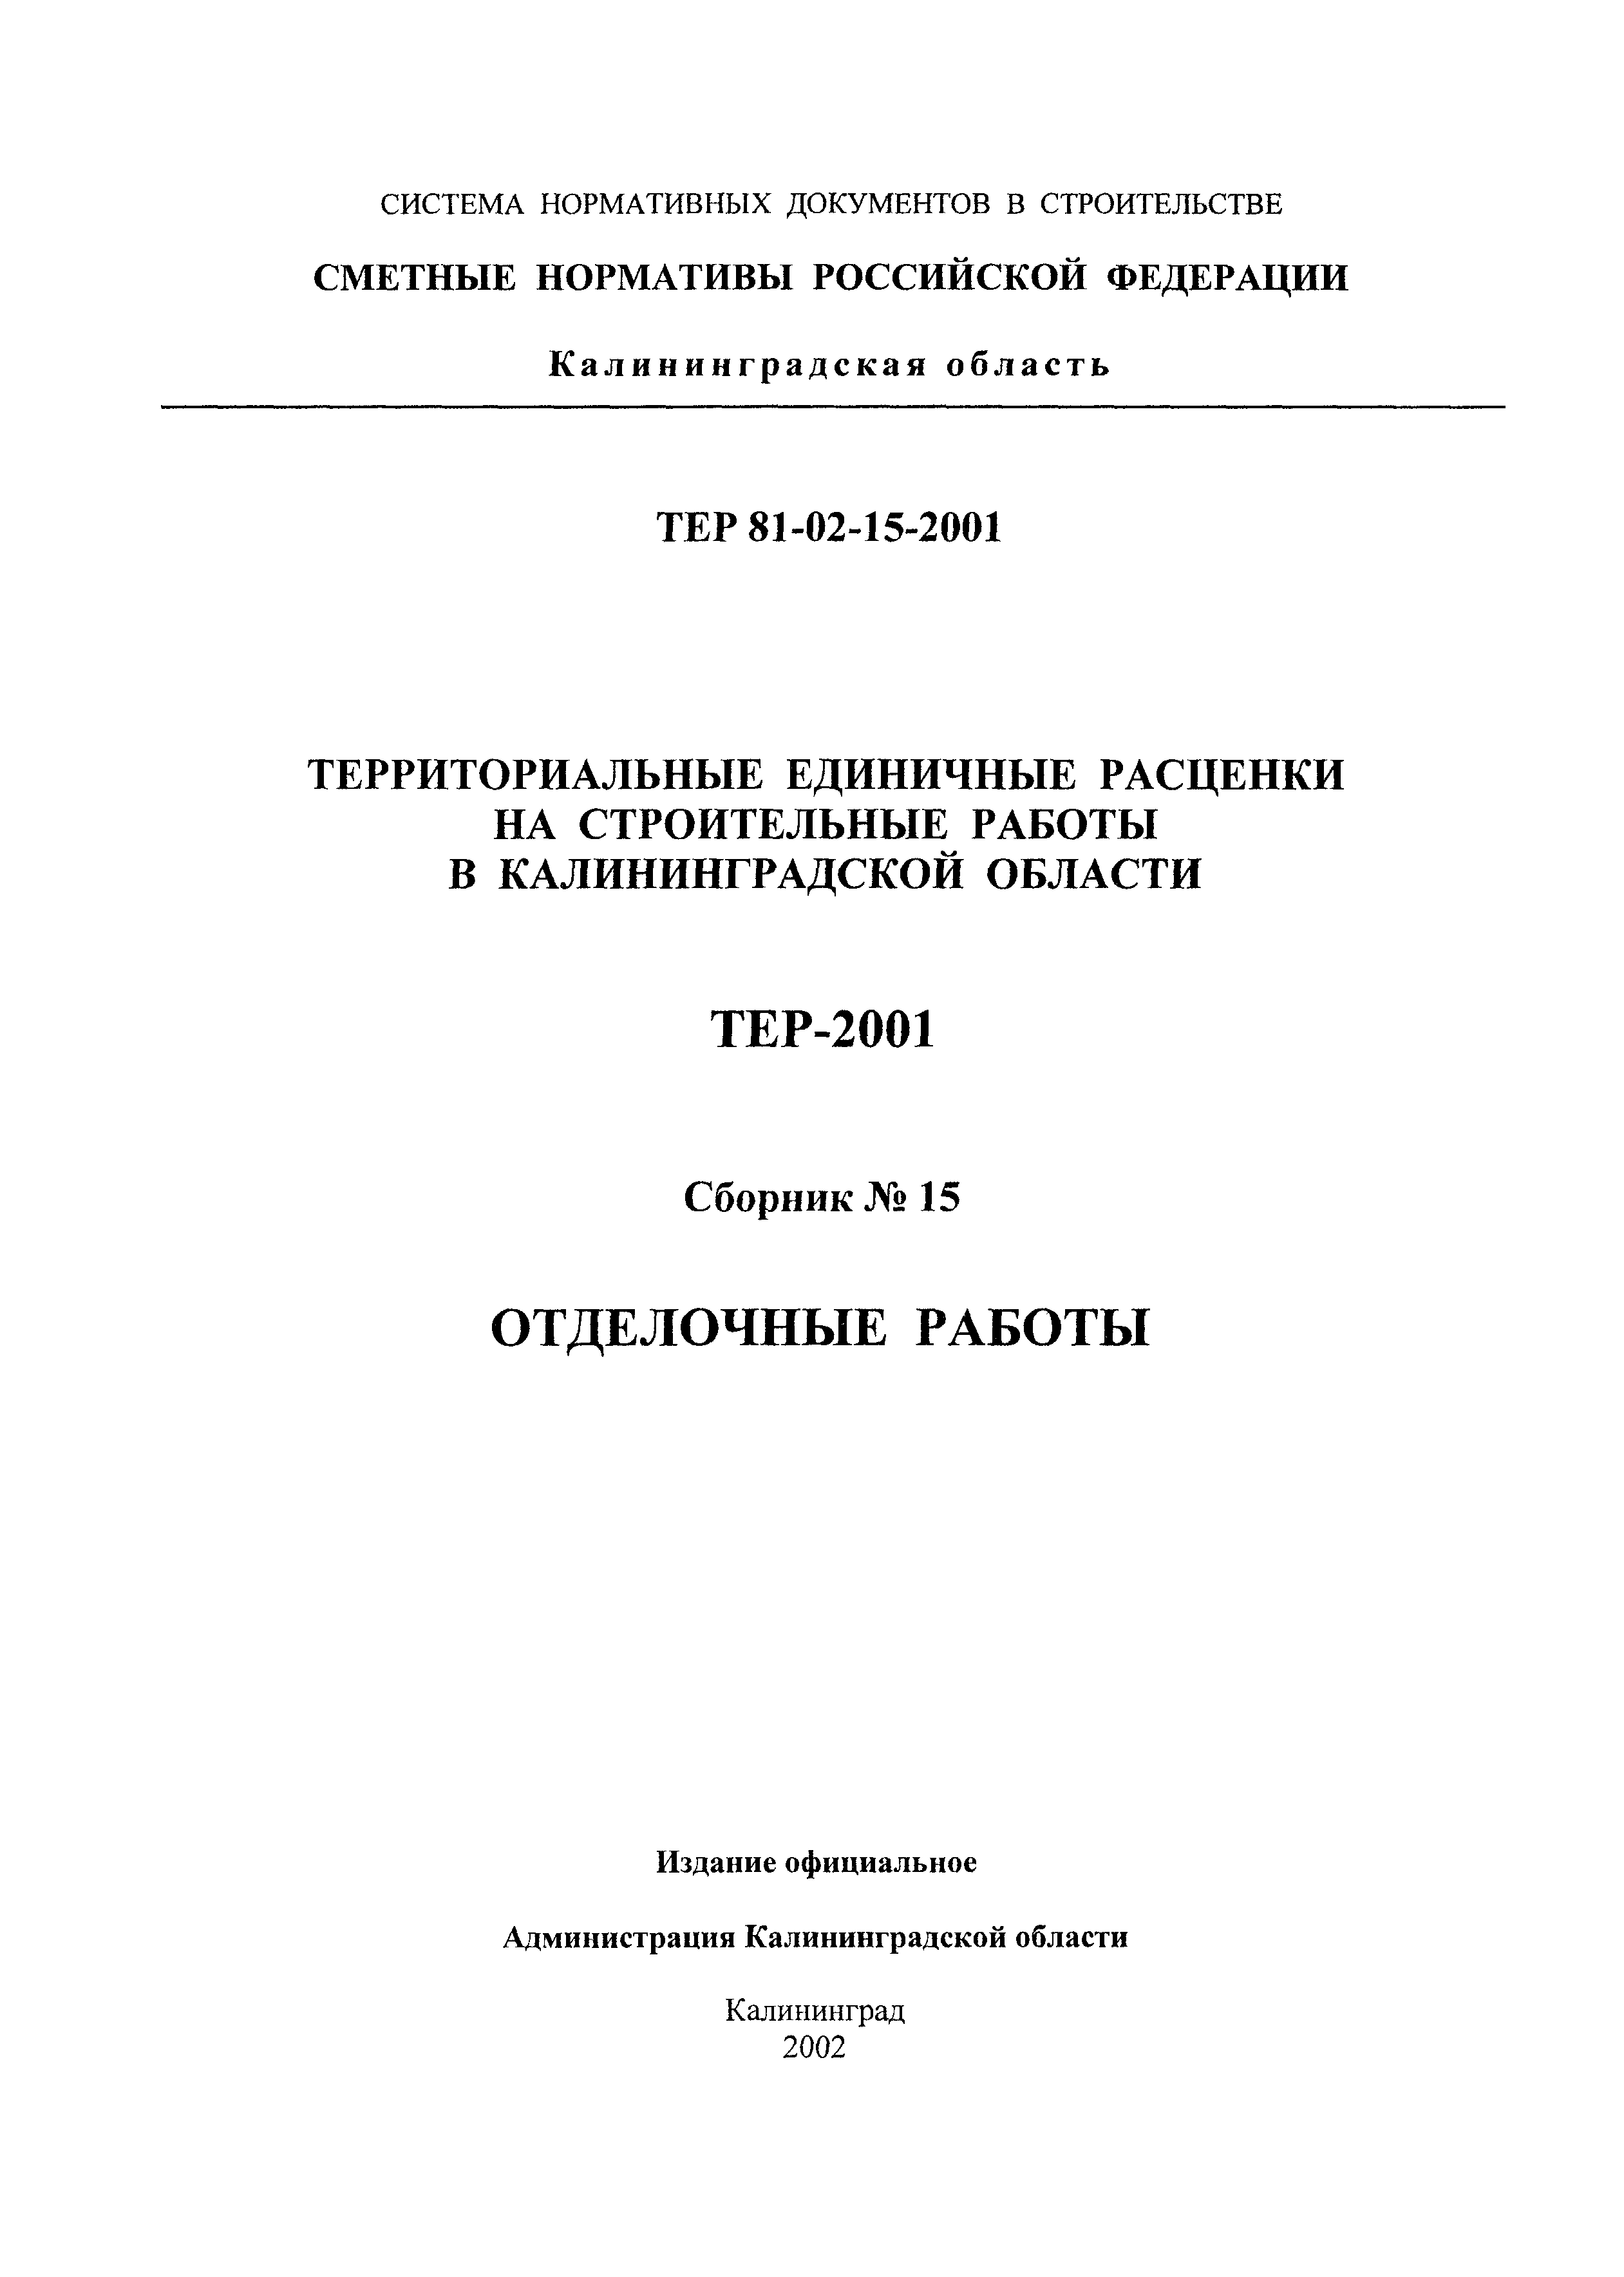 ТЕР Калининградская область 2001-15